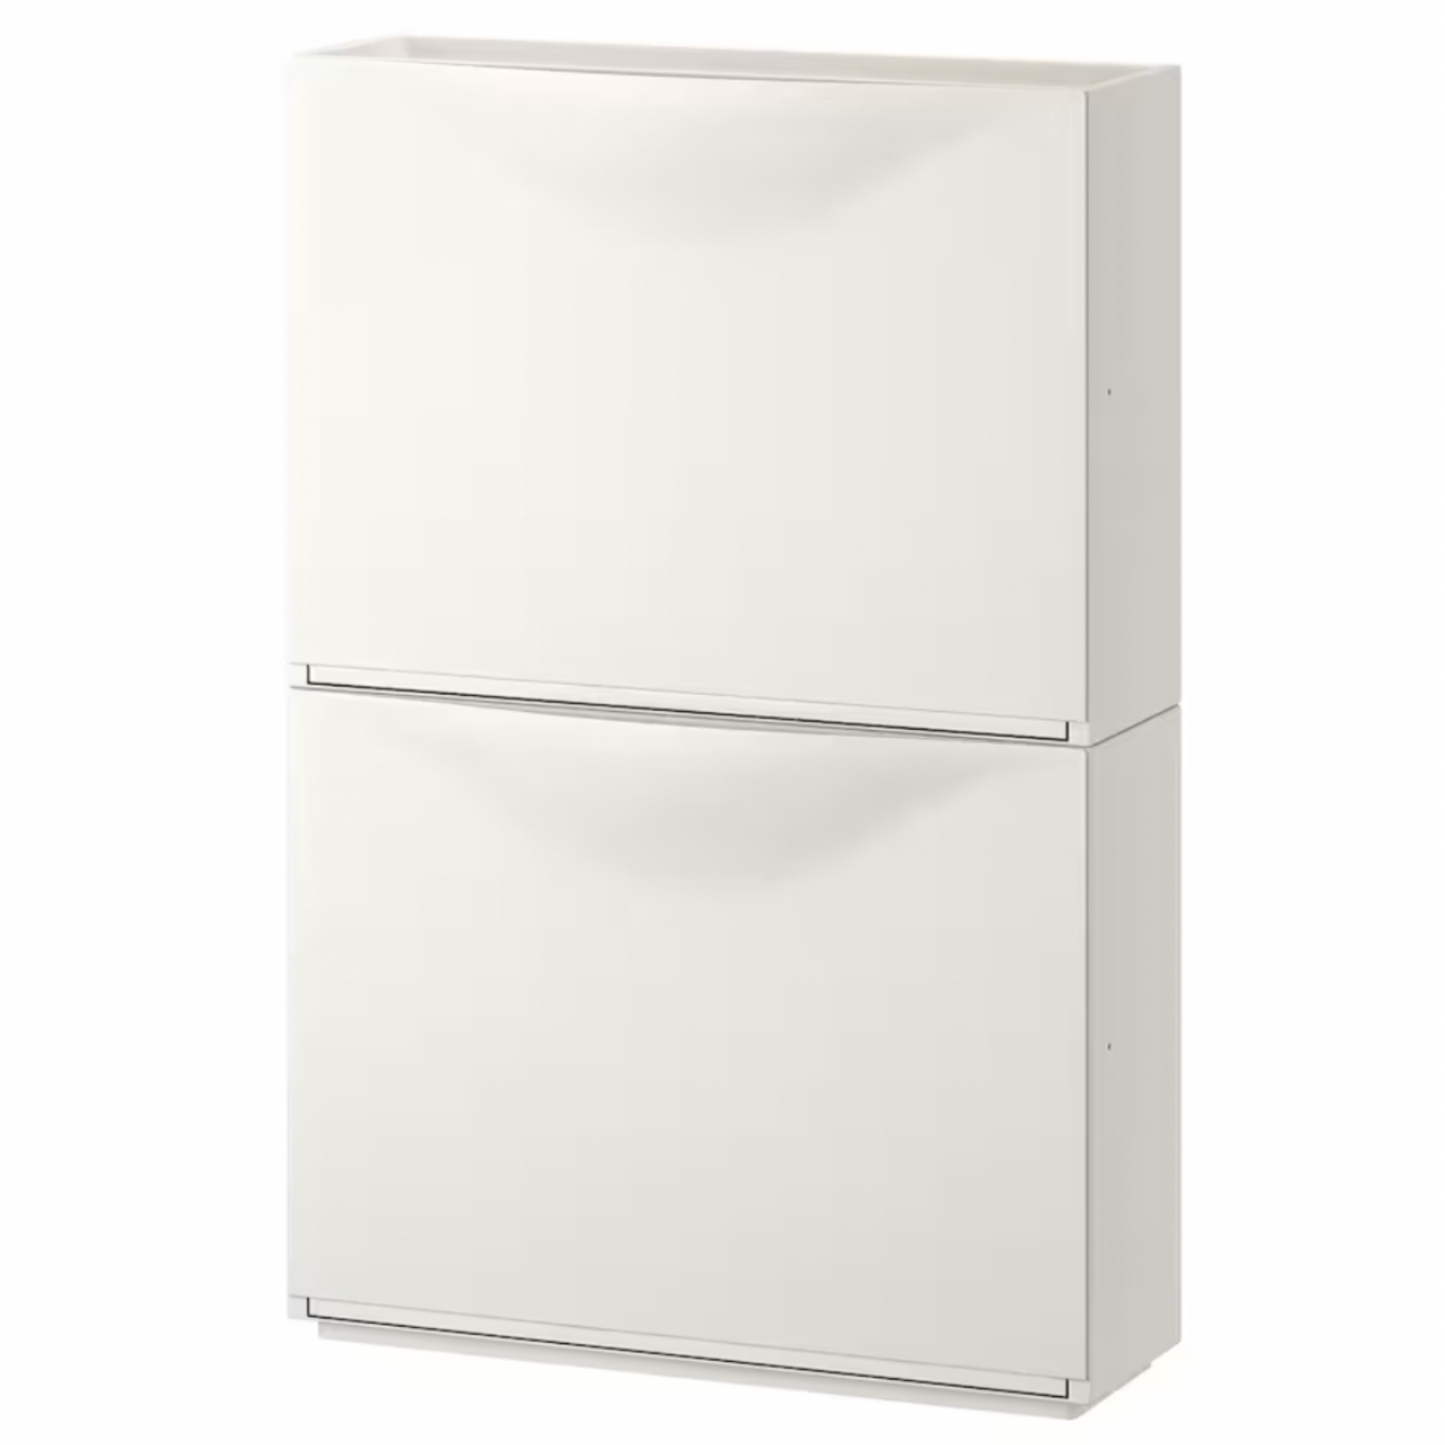 IKEA Trones Shoe Cabinet, White (4660258897985)